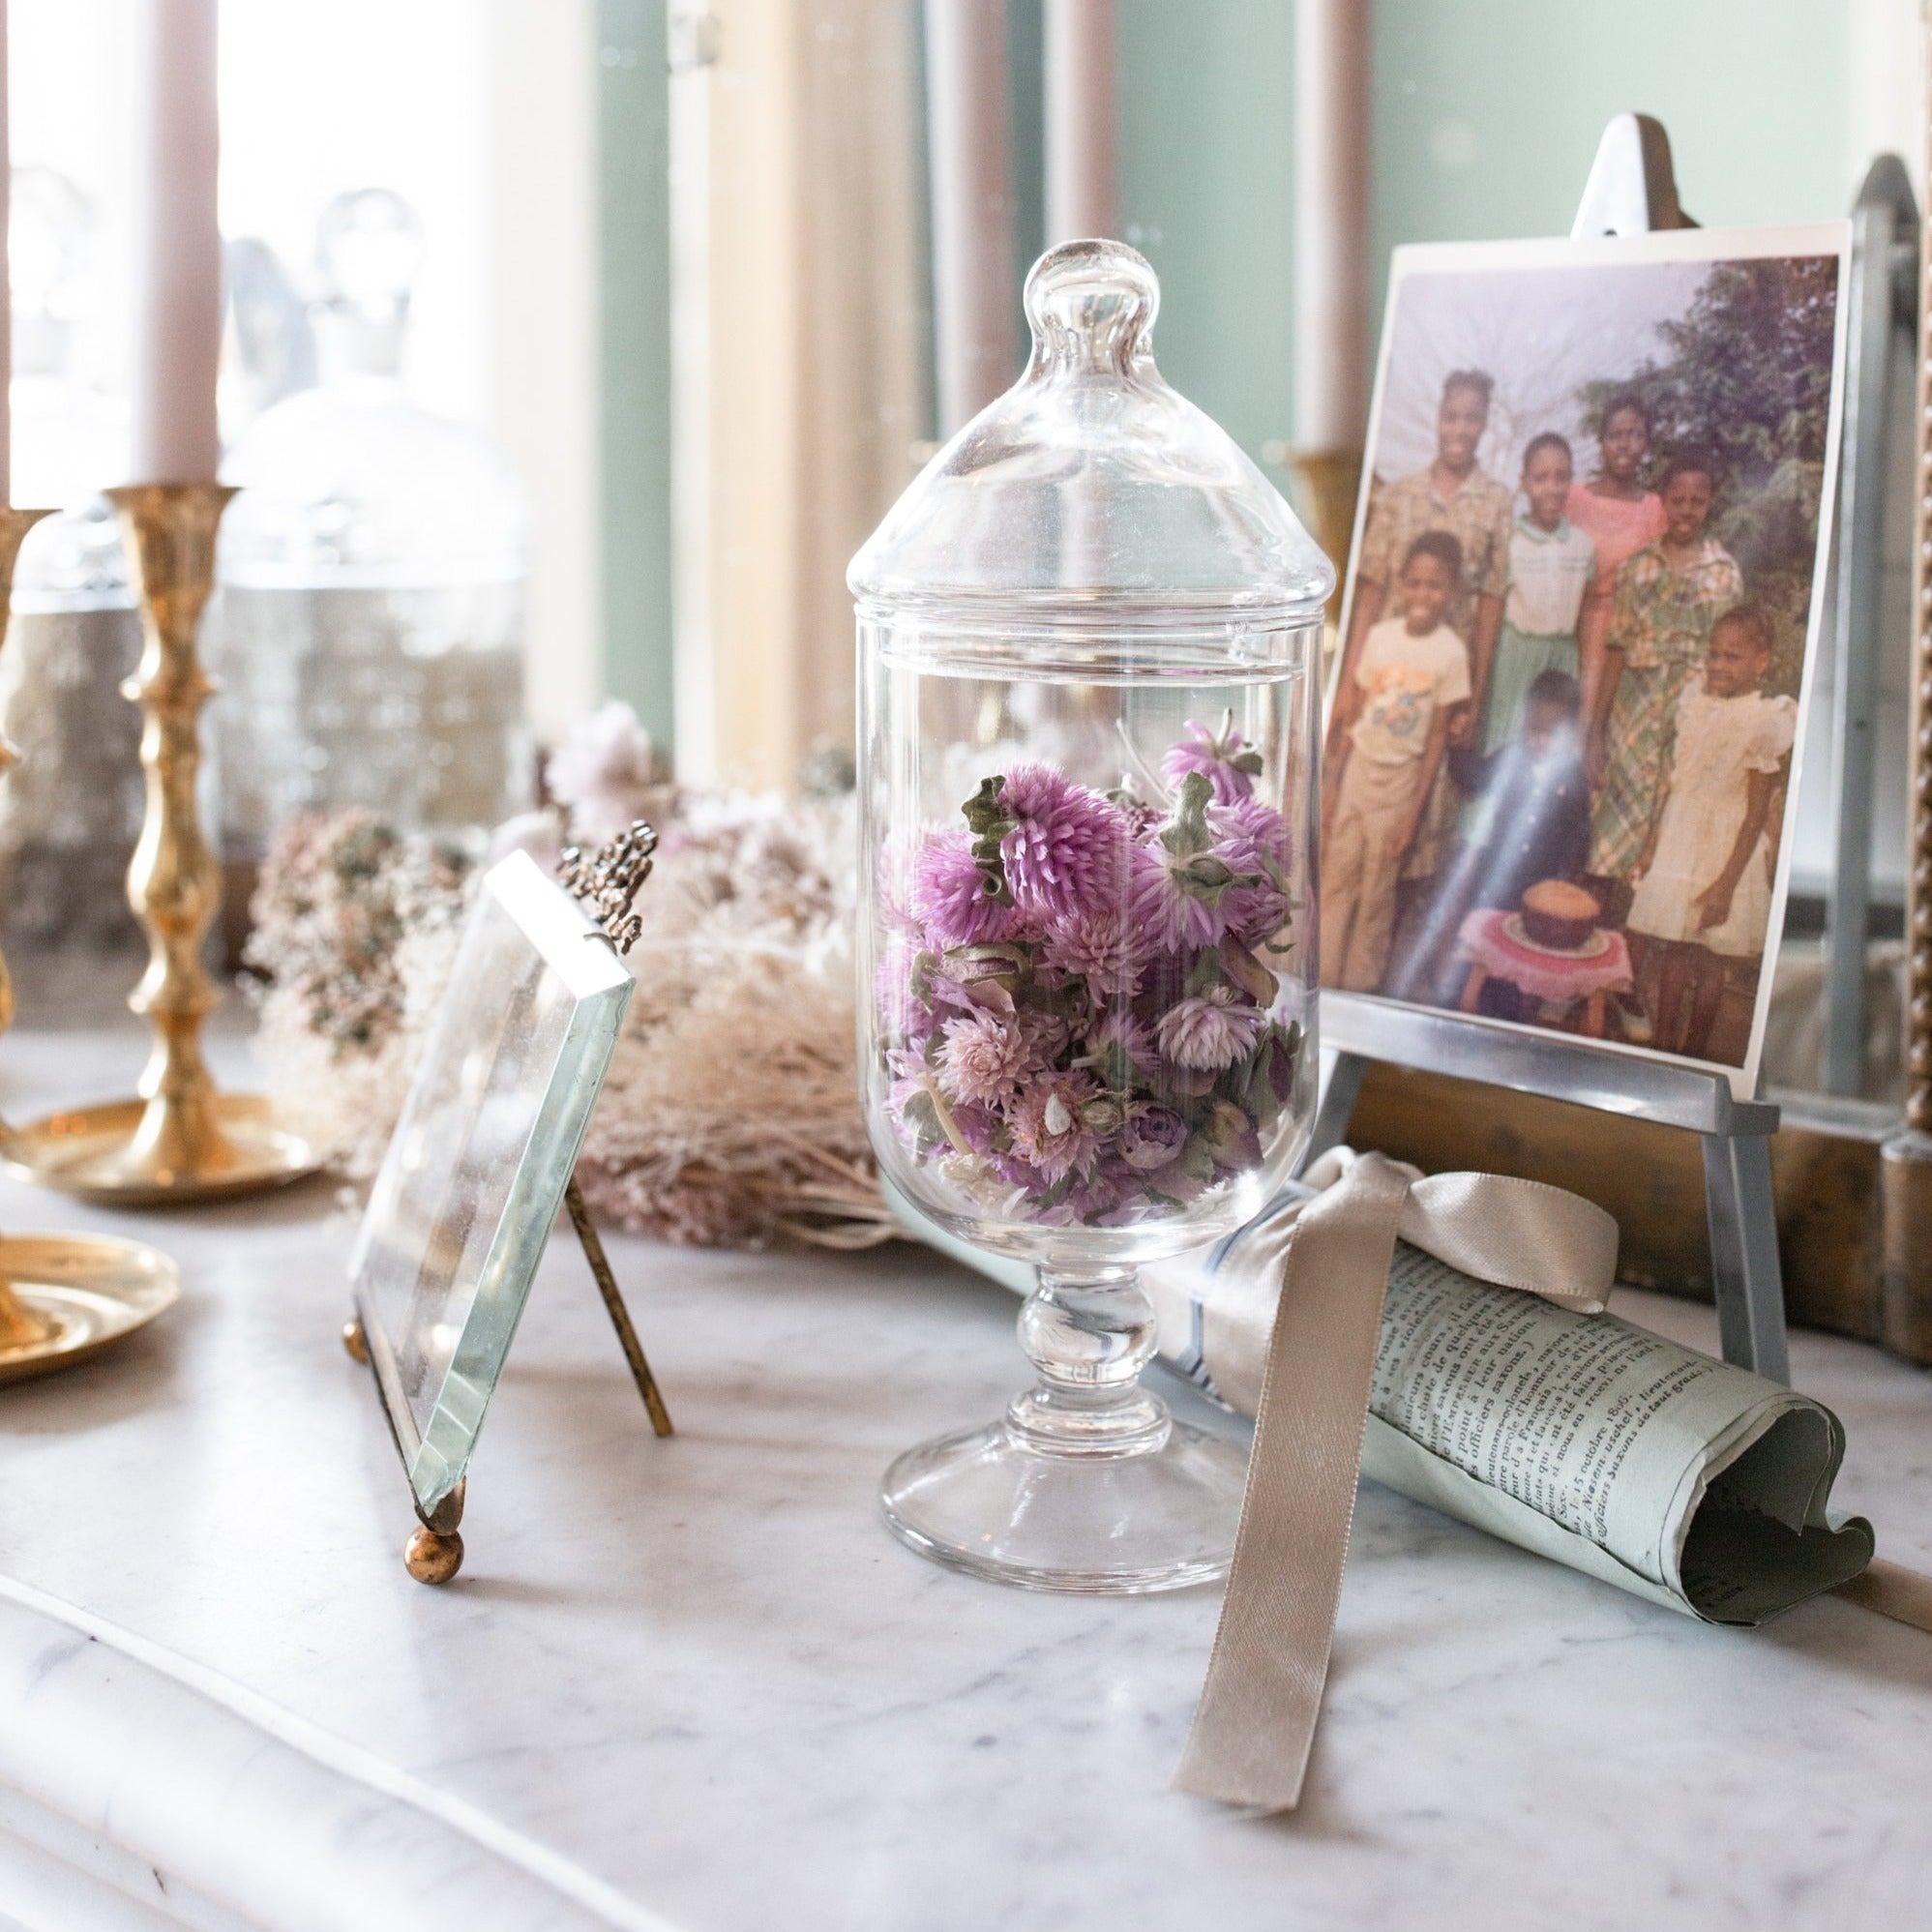 Antique Glass Candy Jar – Madame de la Maison